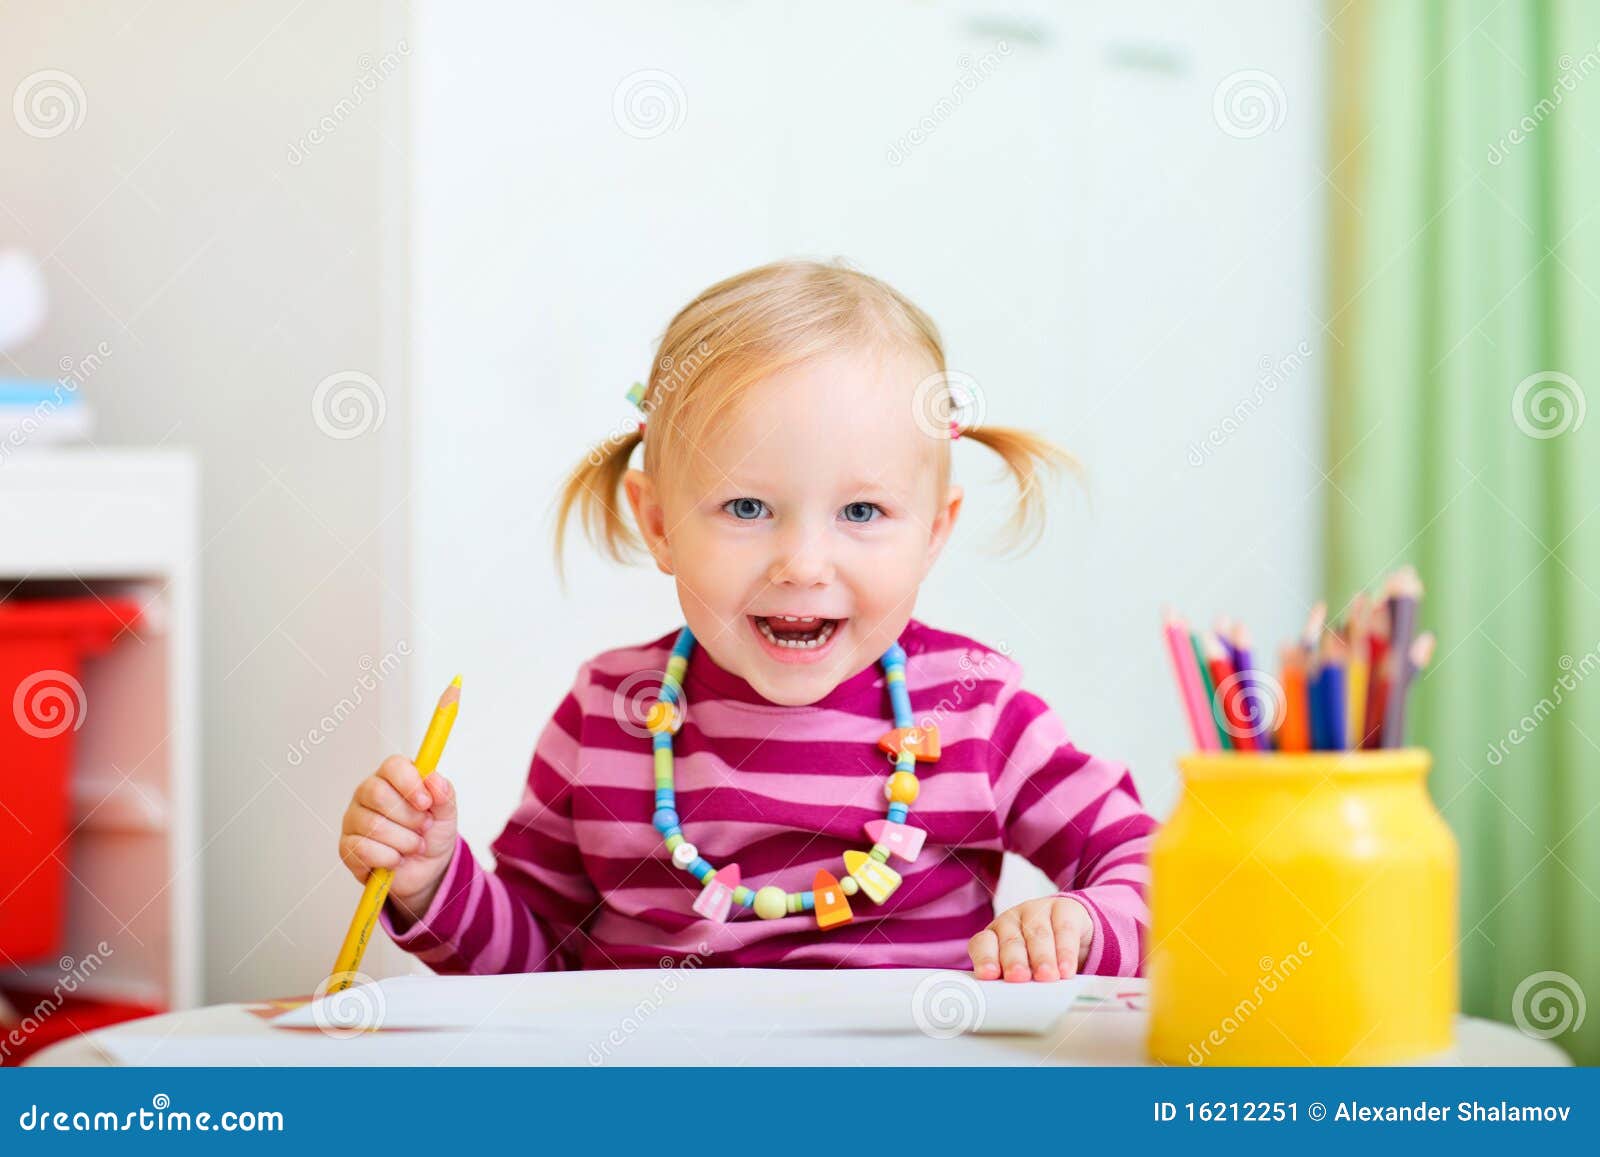 Freundliche Kleinkindmädchenzeichnung mit Bleistiften.